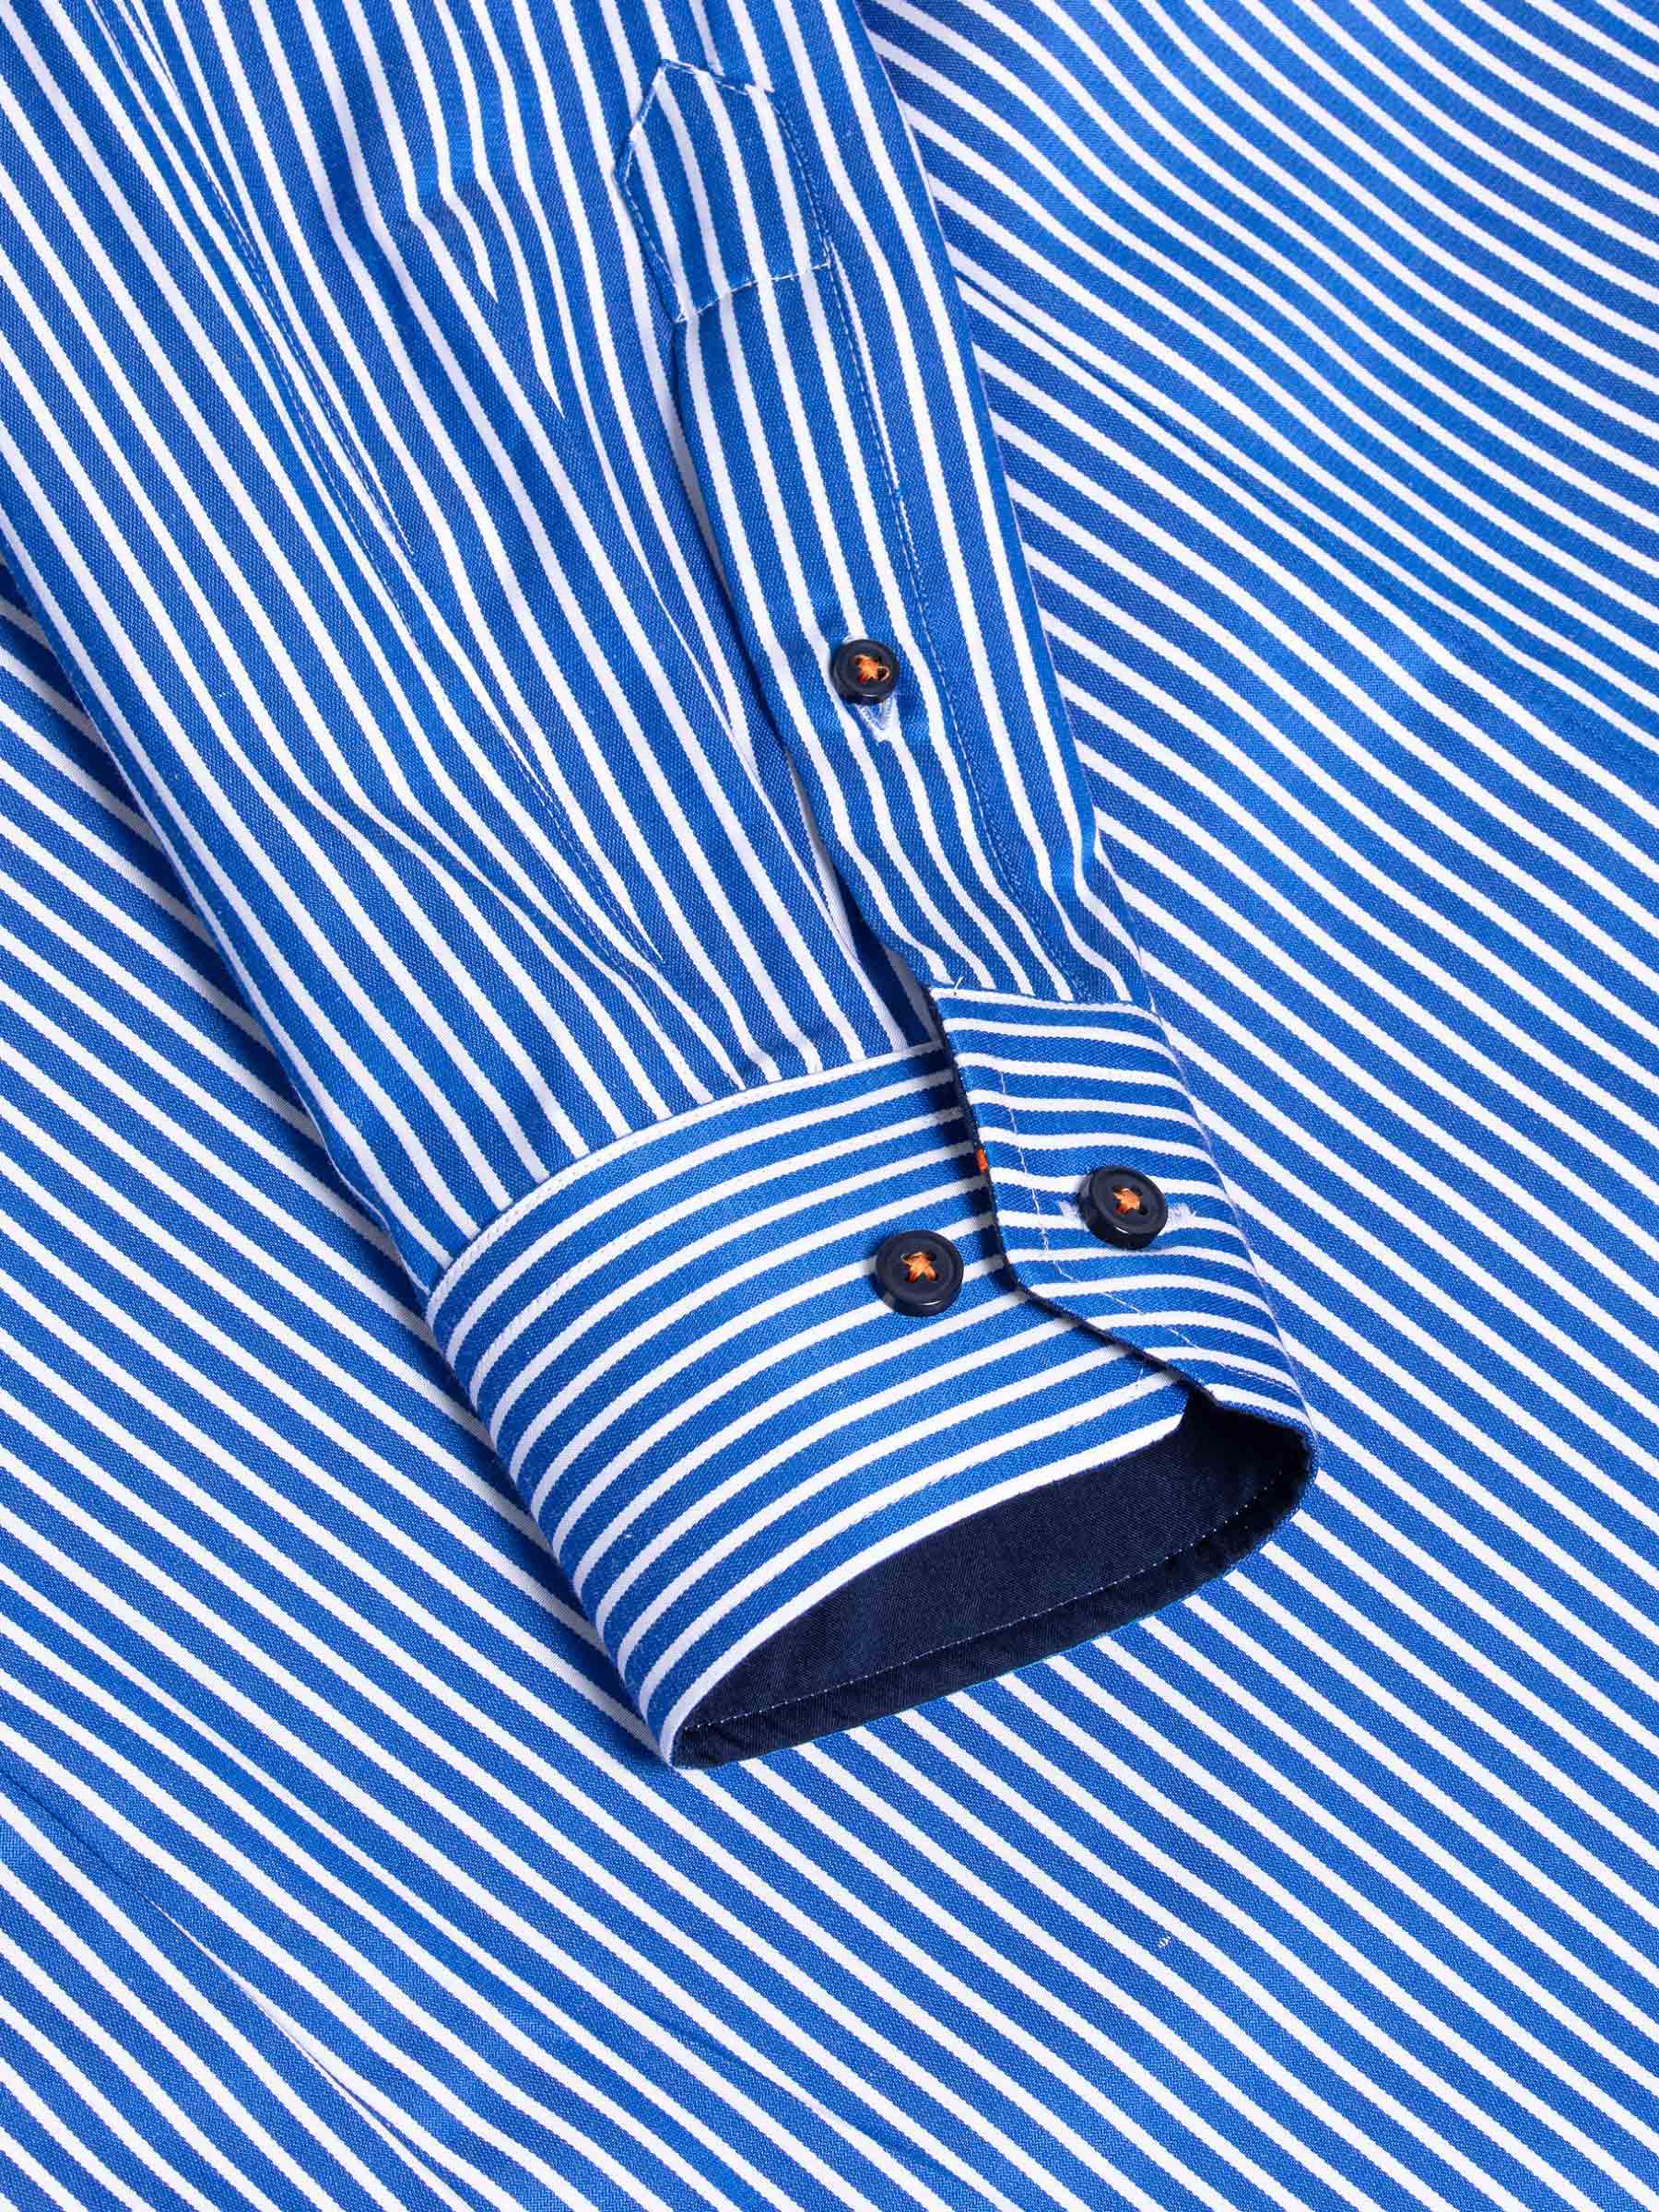 Nancy Royal Blue Striped Long Sleeve Shirt